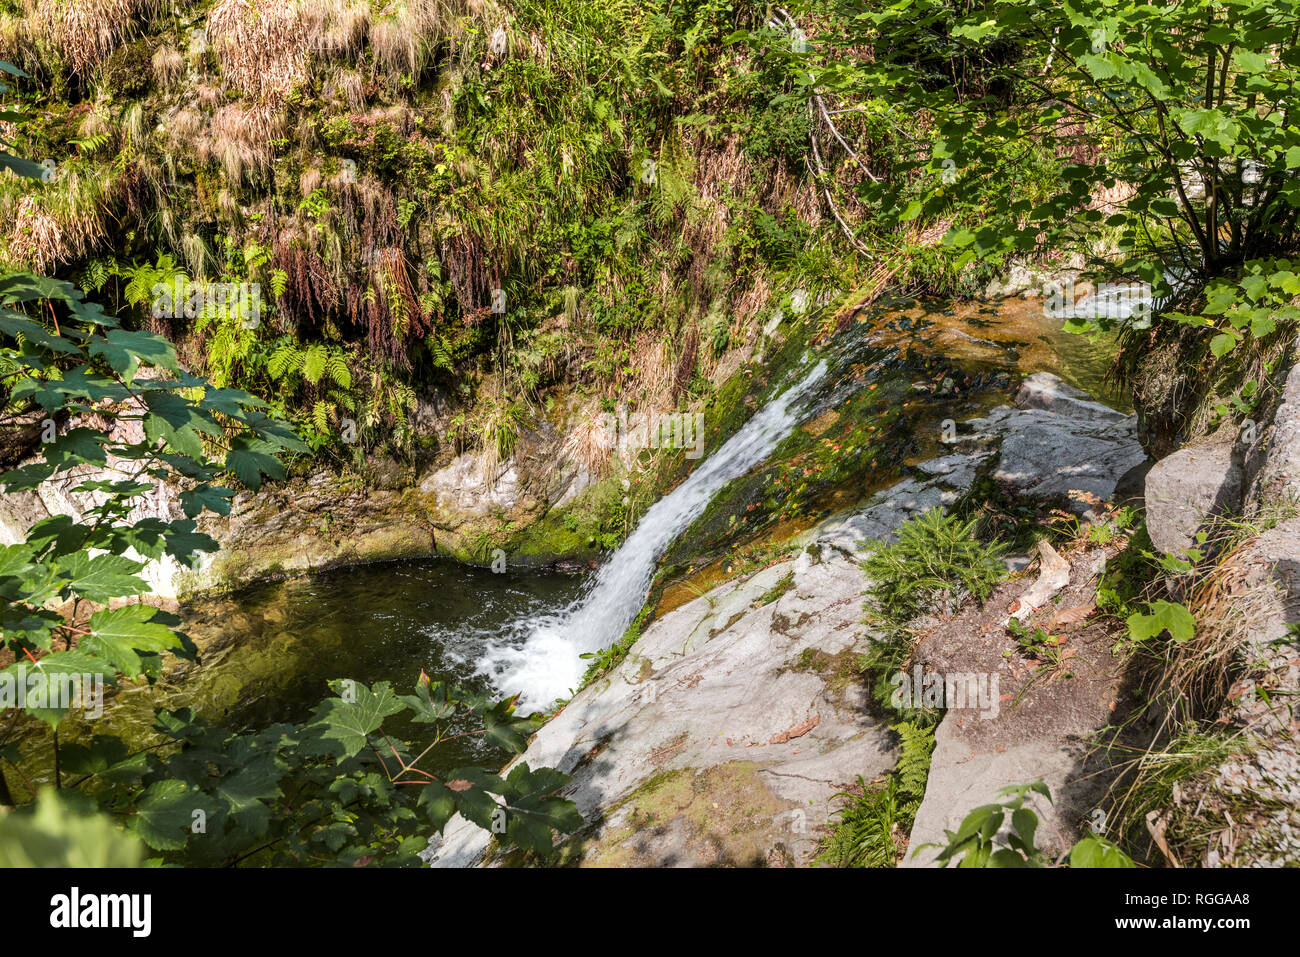 Allerheiligen Wasserfälle, Stadt Oppenau, Nördlicher Schwarzwald, Deutschland, unteren Teil der Wasserfälle Stockfoto